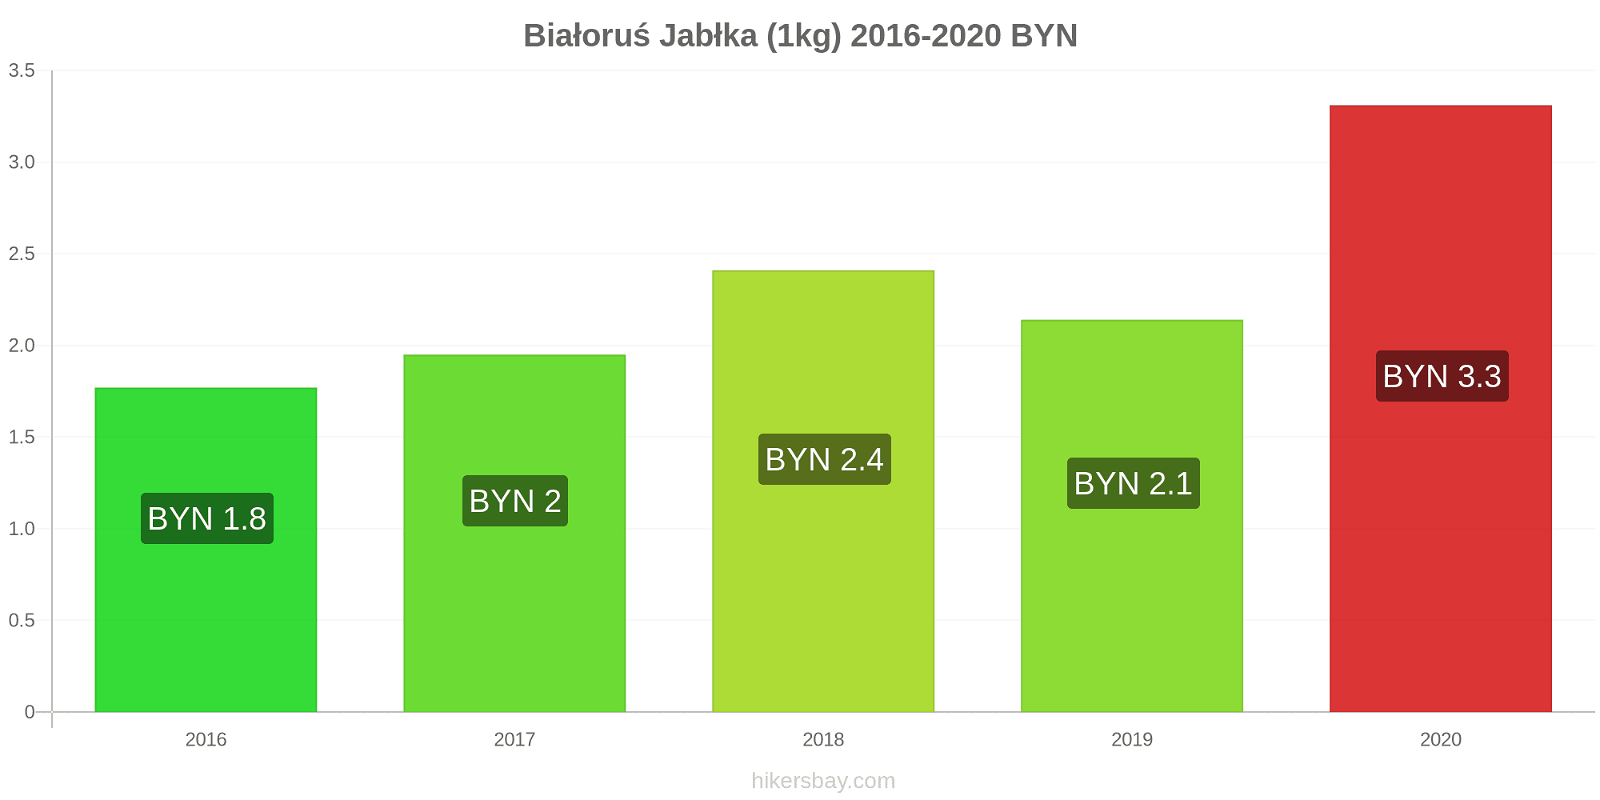 Białoruś zmiany cen Jabłka (1kg) hikersbay.com